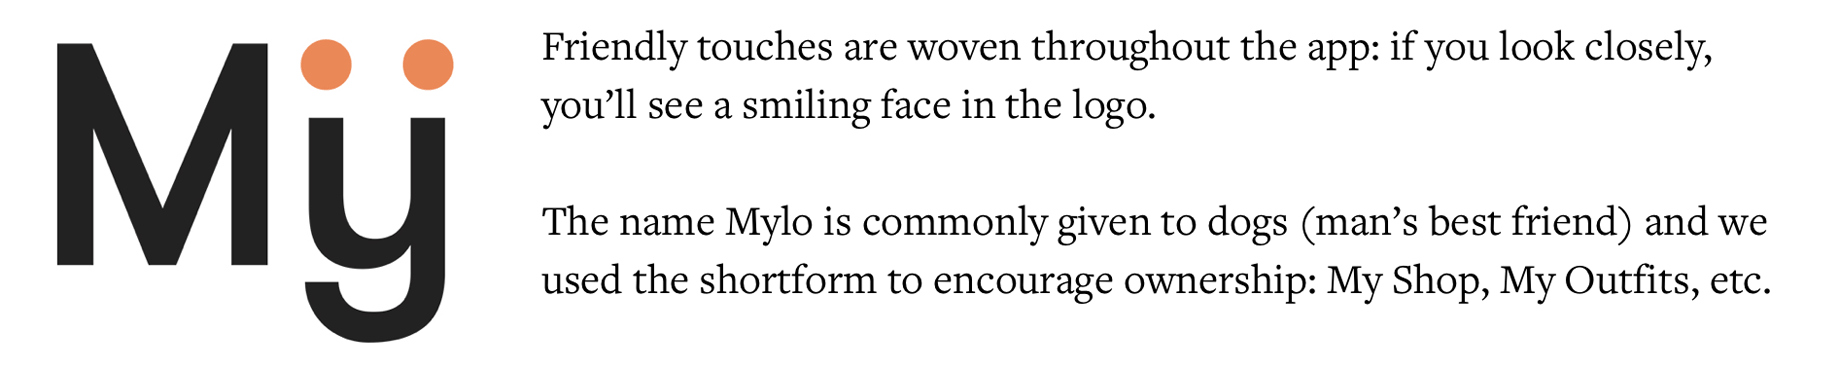 mylo-friendly